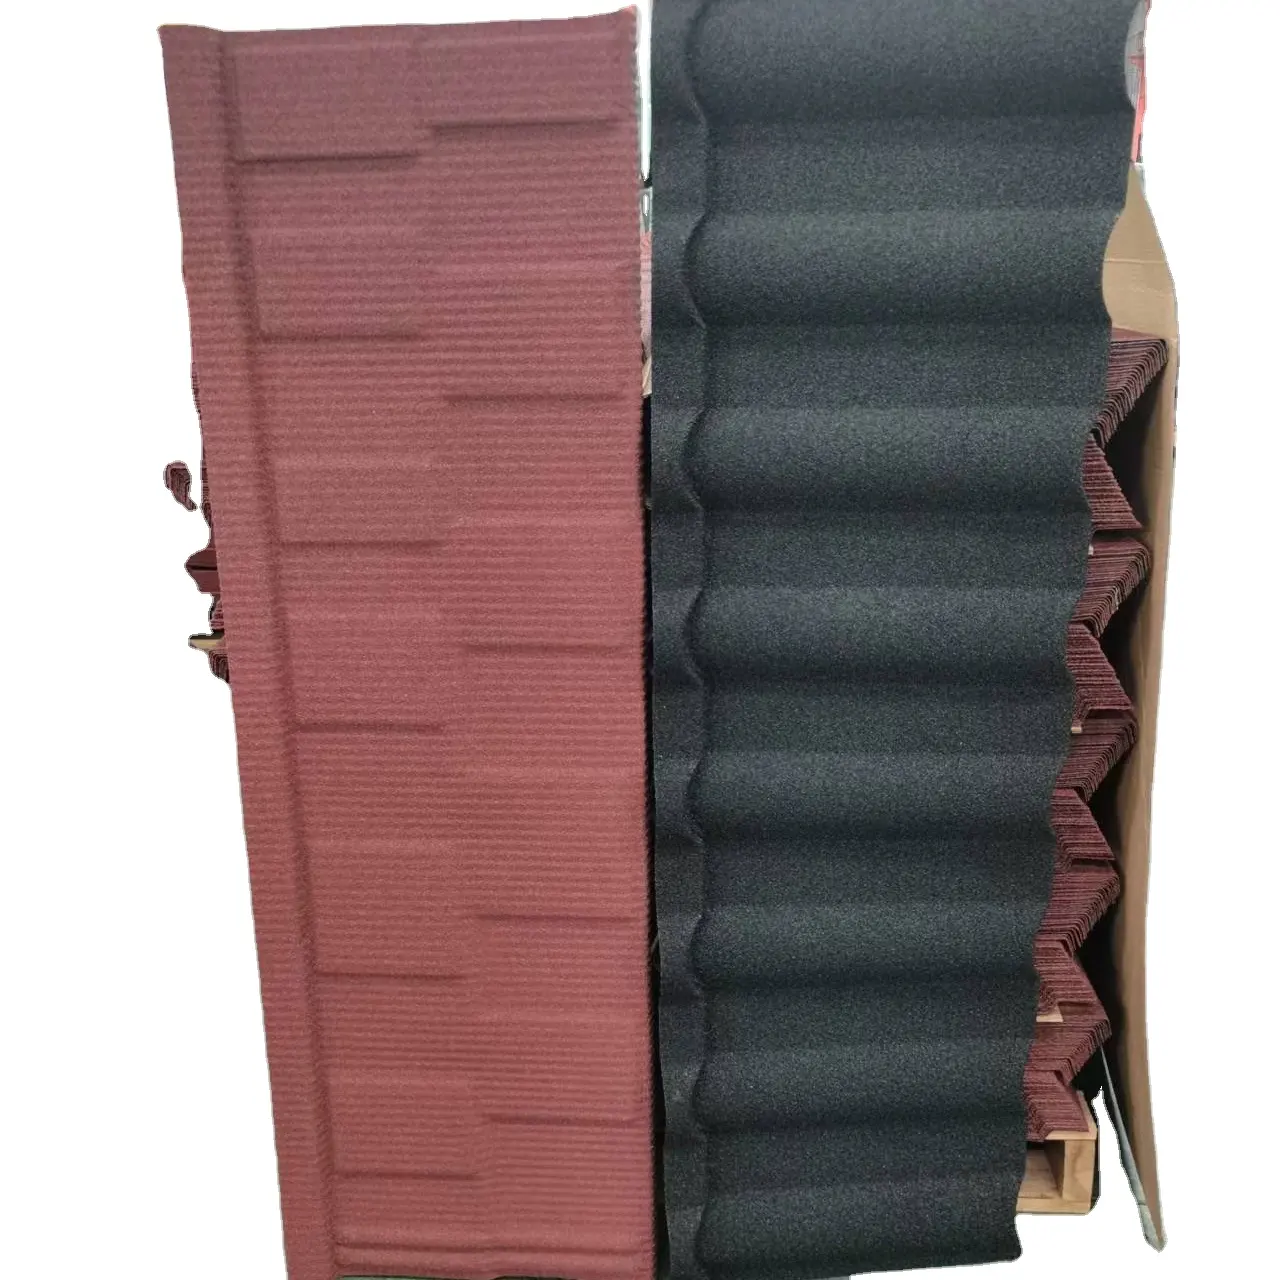 Long Span Steel Clip Lock Profil Hitze beständiges Gummi dach blech/Steins päne Beschichteter Dachziegel/Dach material Preis